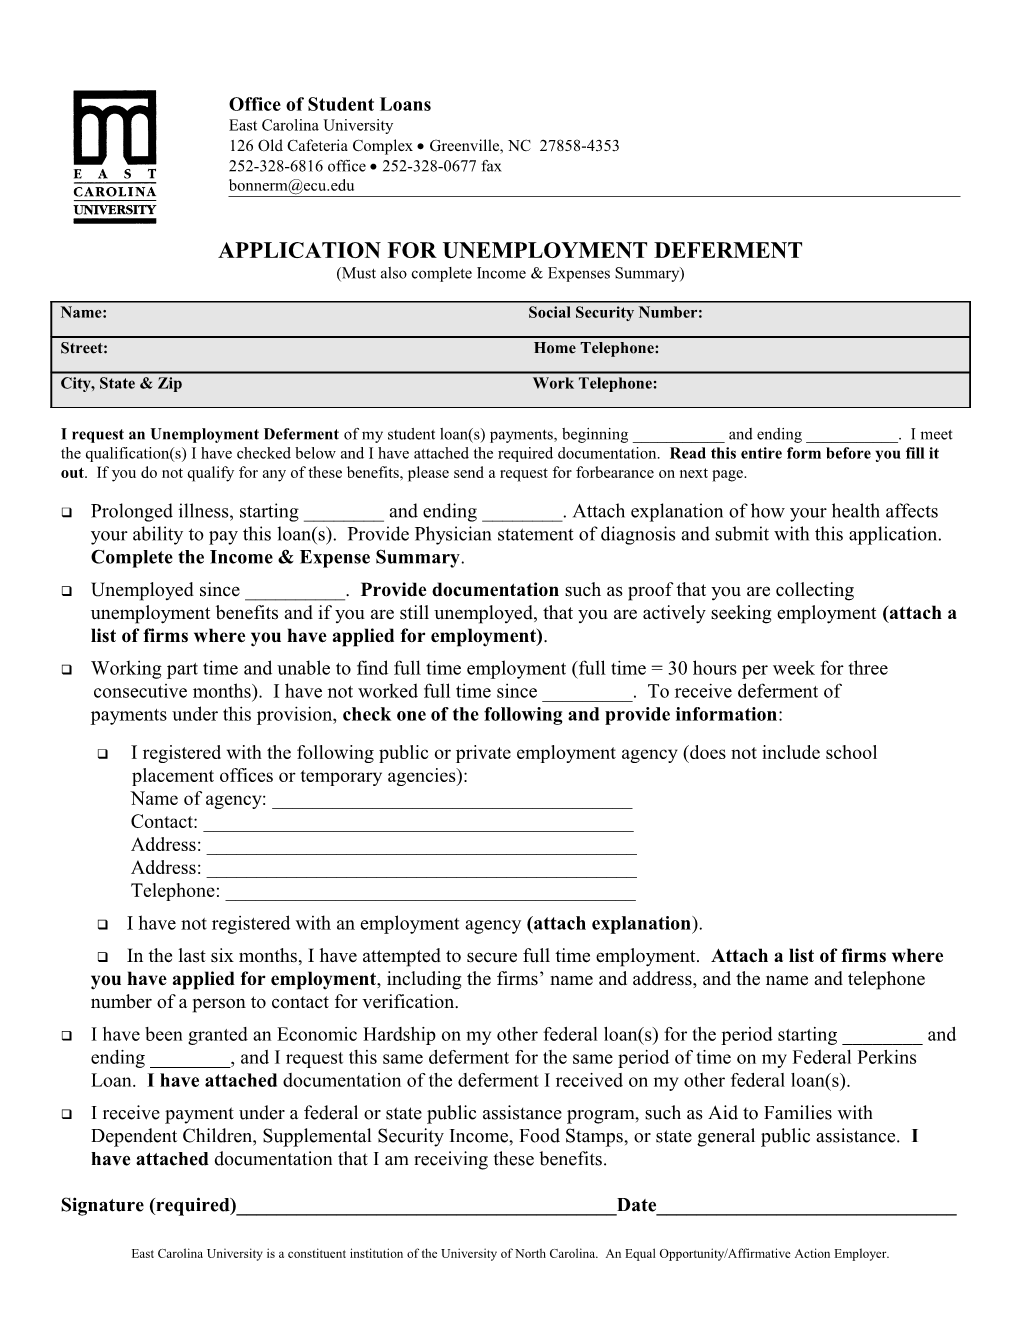 Application for Unemployment Deferment